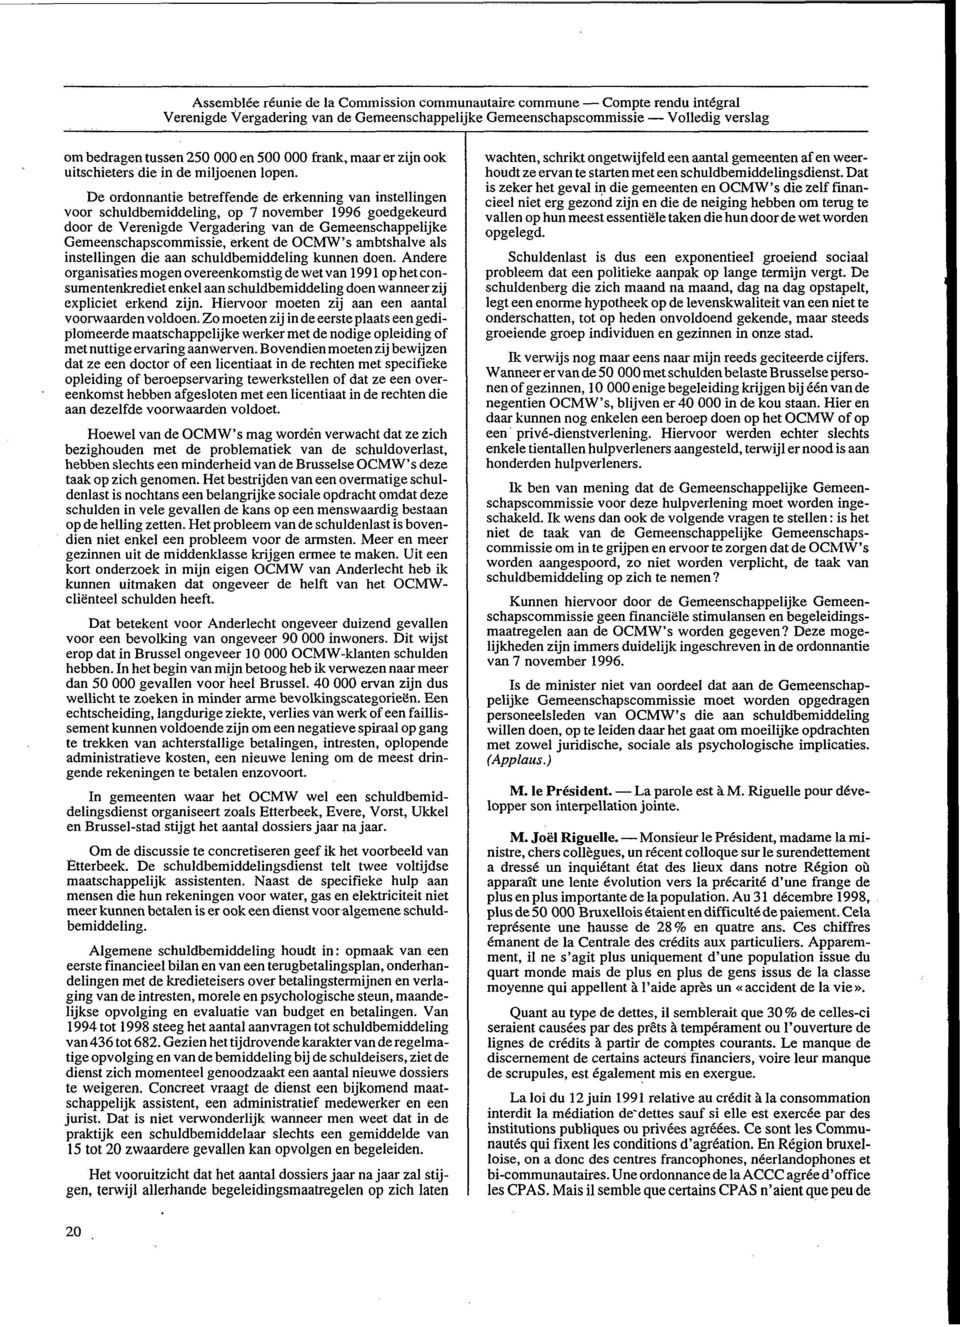 De ordonnantie betreffende de erkenning van instellingen voor schuldbemiddeling, op 7 november 1996 goedgekeurd door de Verenigde Vergadering van de Gemeenschappelijke Gemeenschapscommissie, erkent